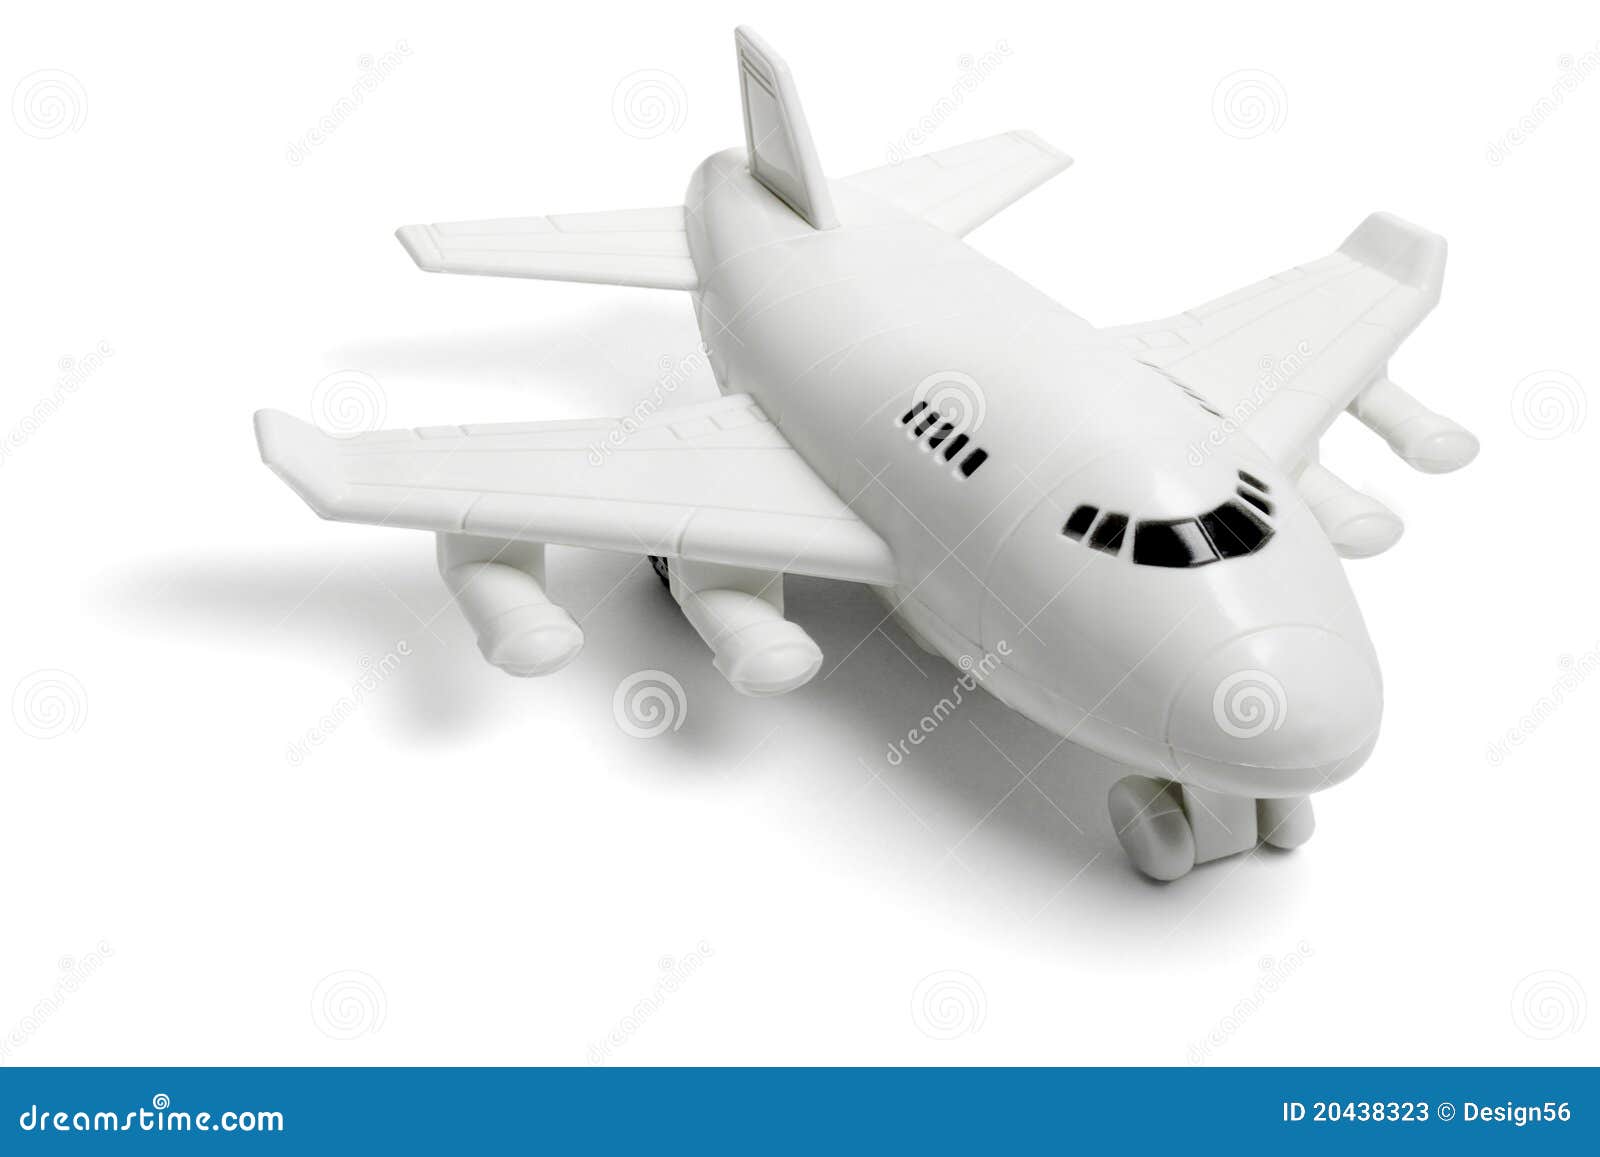 baas Geaccepteerd kruising Plastic stuk speelgoed jet stock afbeelding. Image of vliegen - 20438323